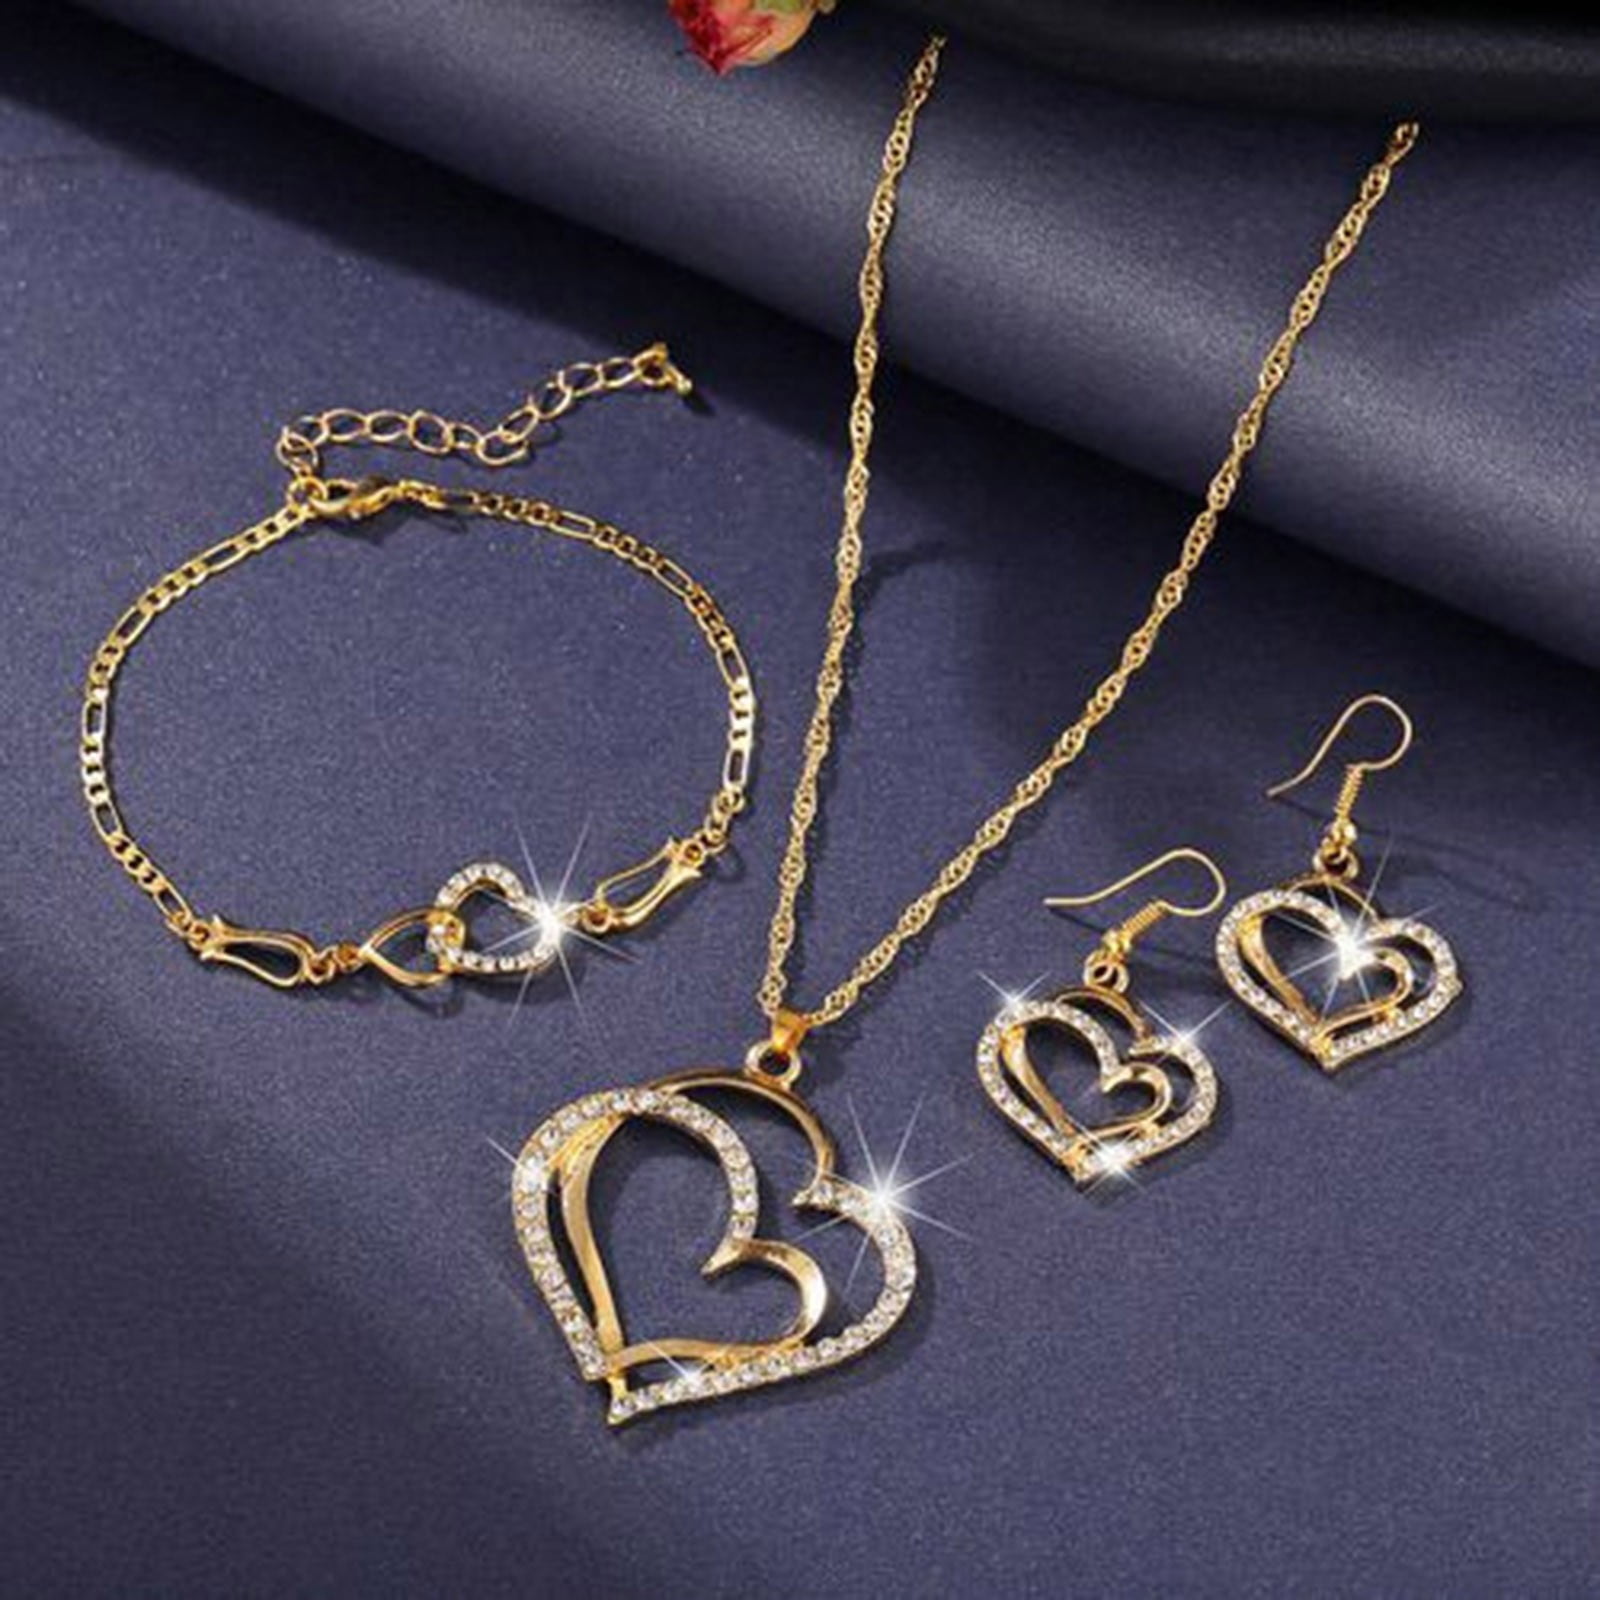 Women's Jewelry, Necklaces, Earrings, Bracelets